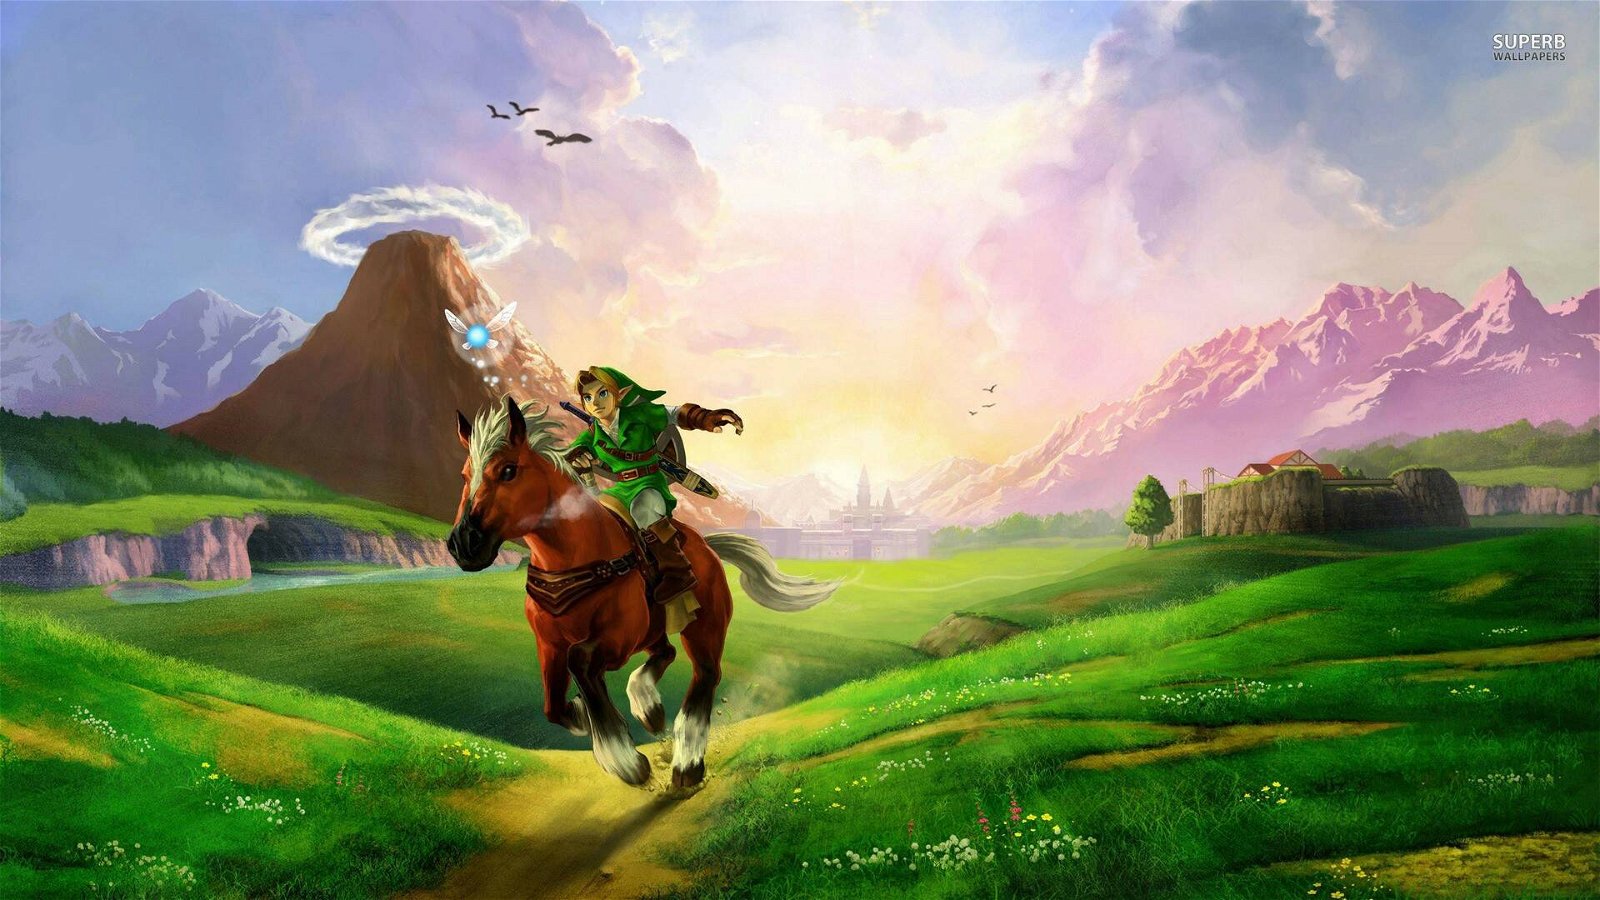 Immagine di Zelda aveva già inventato Portal: ecco i retroscena dietro Ocarina of Time